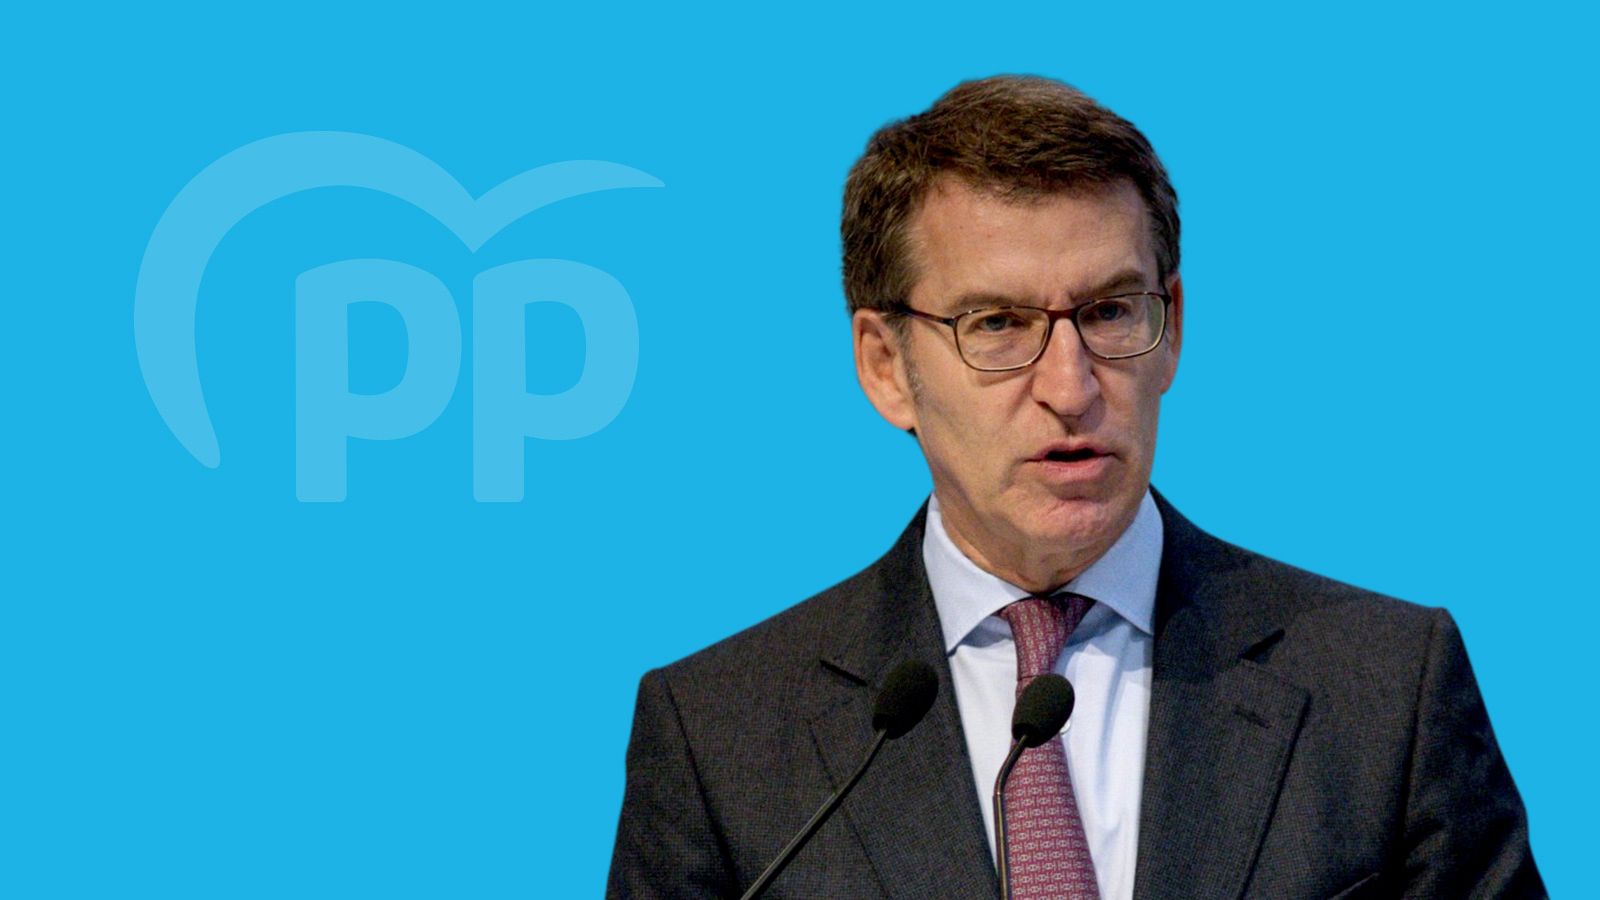 Elecciones en Galicia 2020: Perfil de Alberto Núñez Feijóo, candidato del PP a presidir la Xunta de Galicia